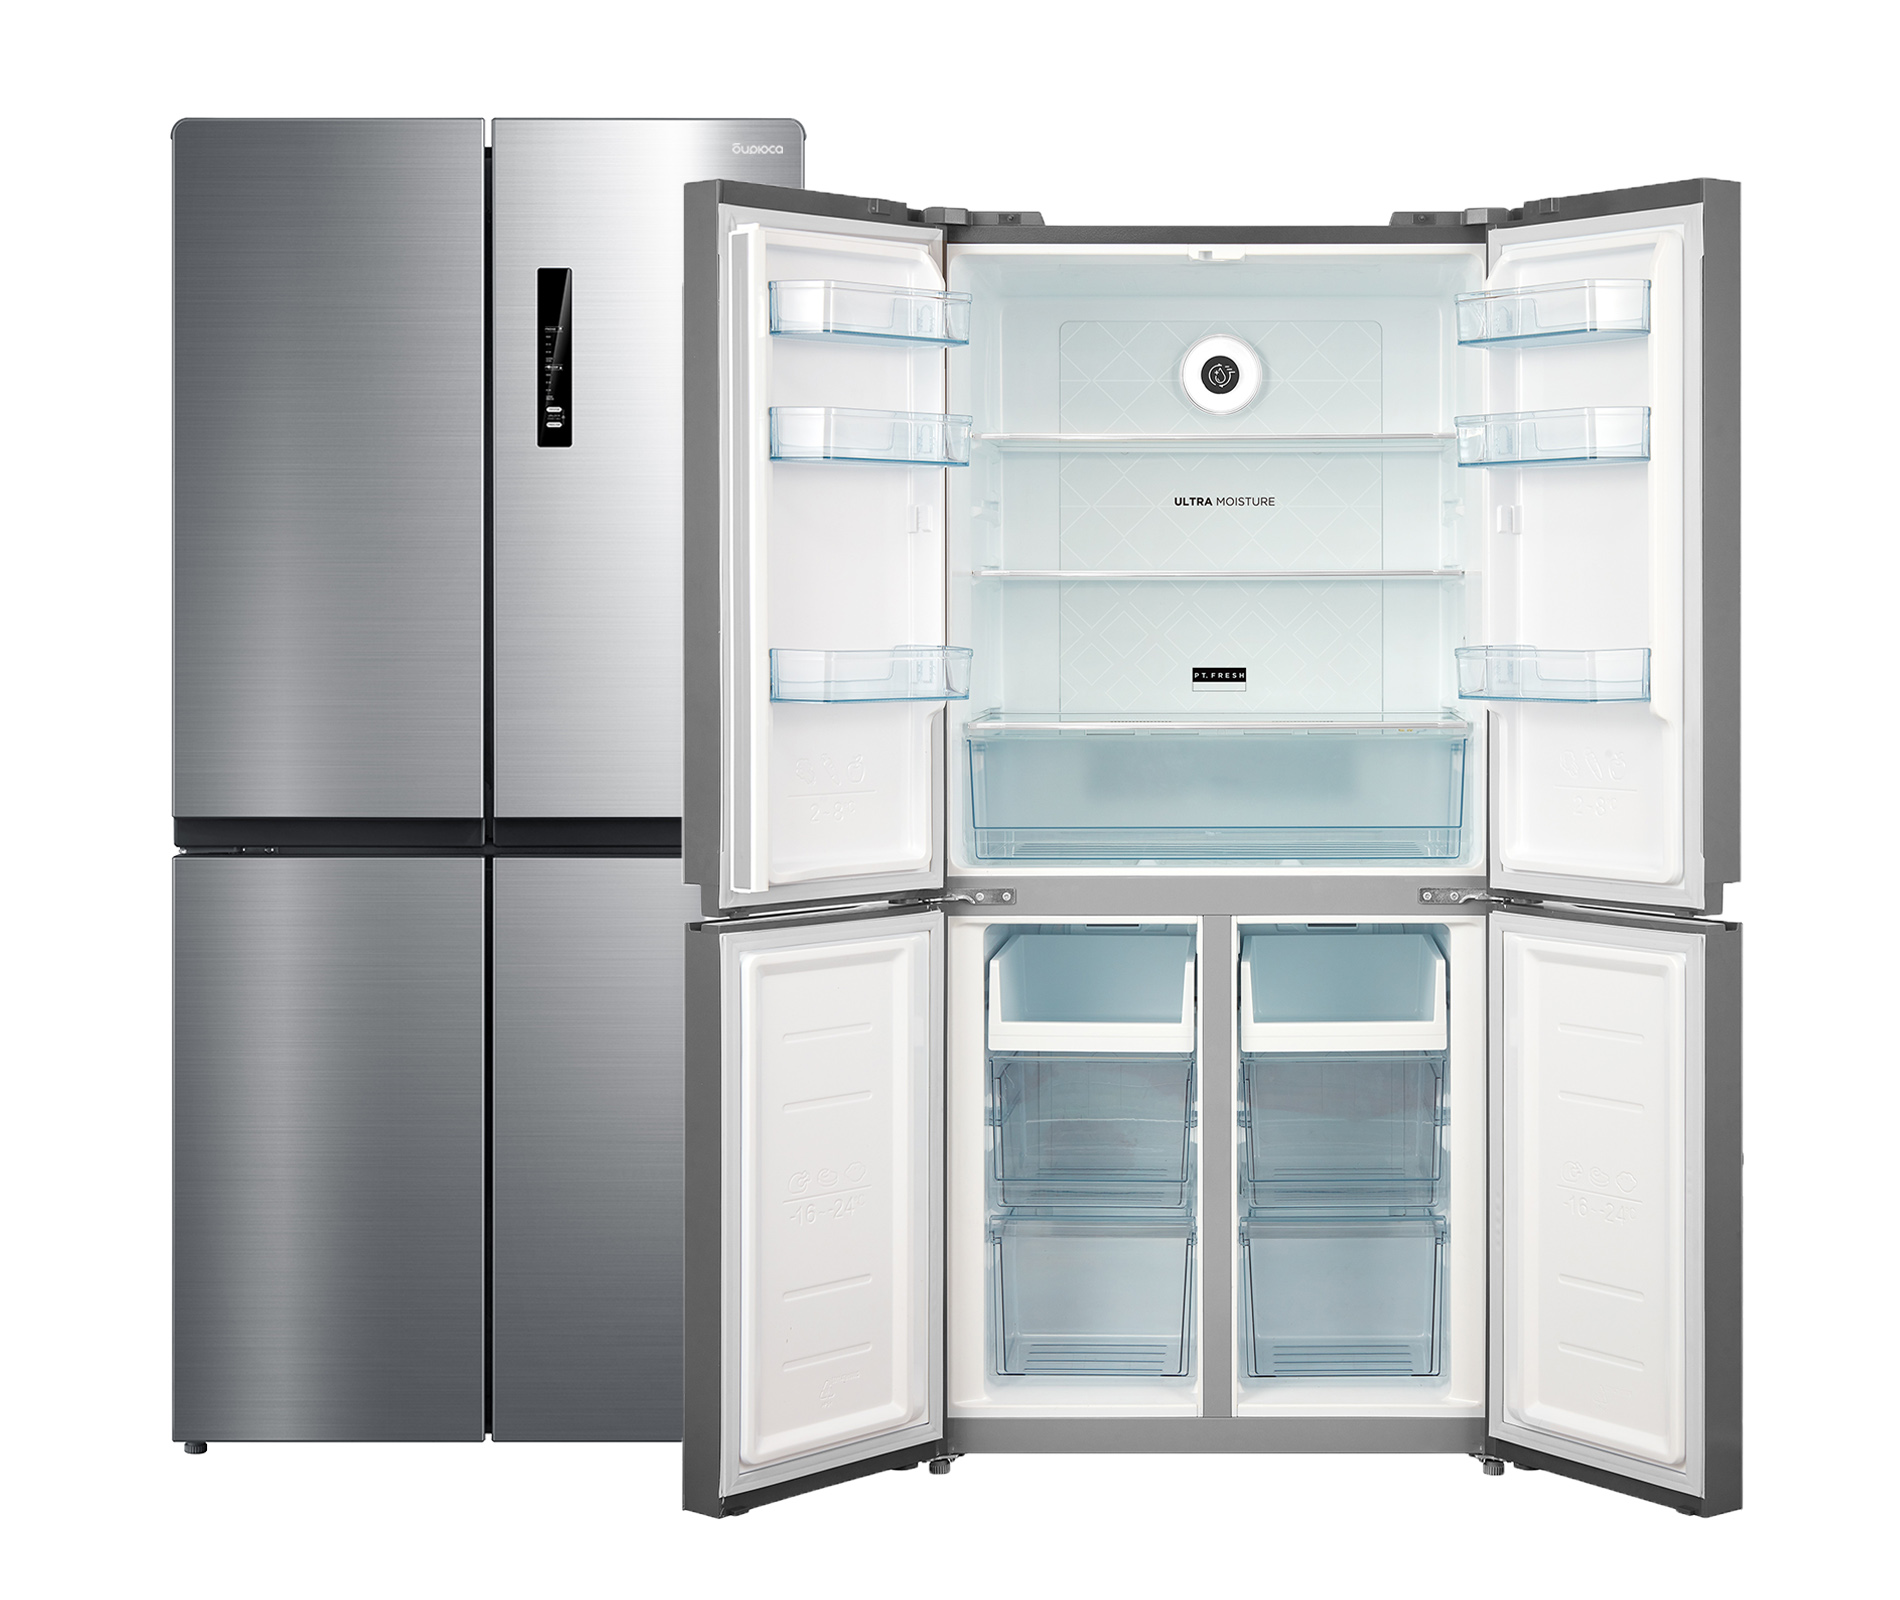 Холодильник БИРЮСА CD 466 I — описание, фото, цены в интернет-магазине Премьер Техно